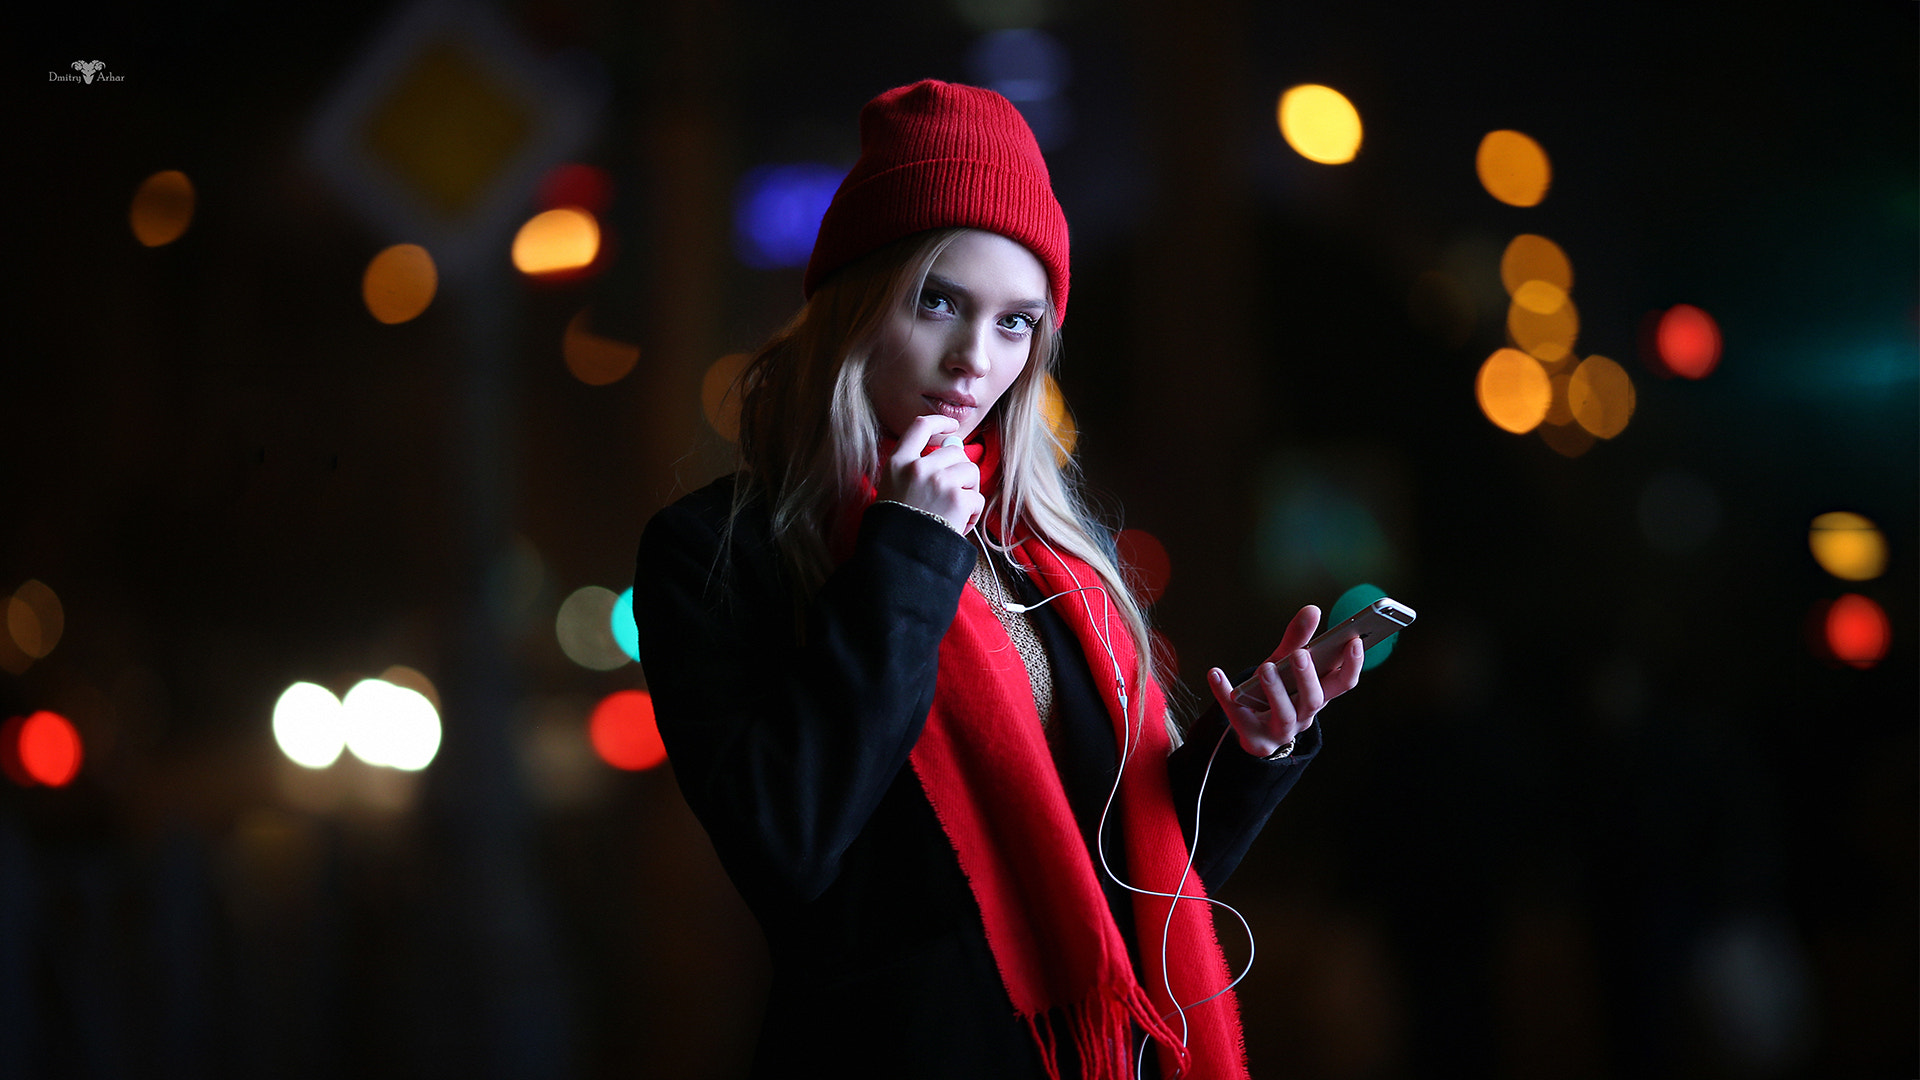 Dmitry Arhar Women Model Looking At Viewer Long Hair Blonde Depth Of Field Scarf IPhone Black Coat G 1920x1080